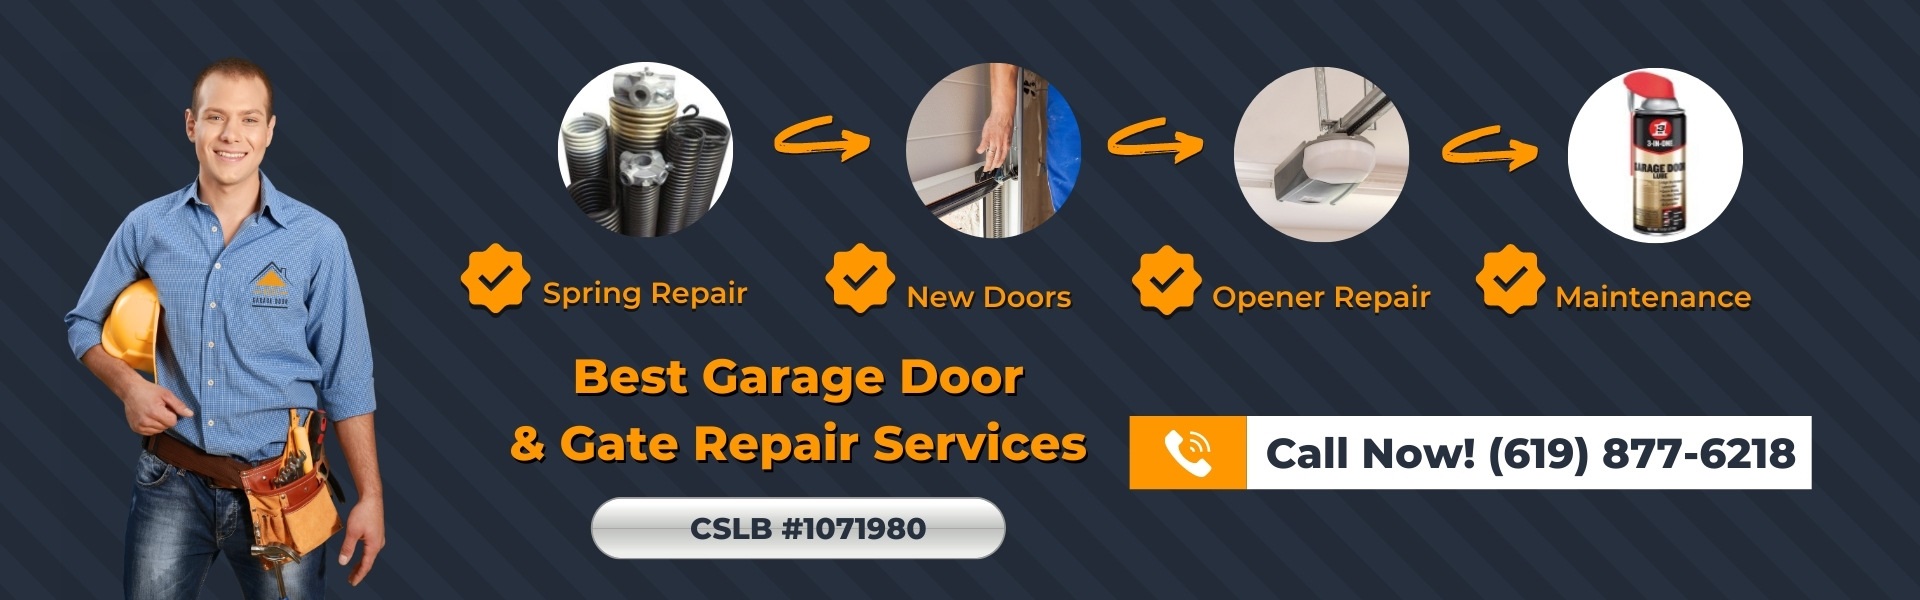 Best Garage Door & Gate Repair Service